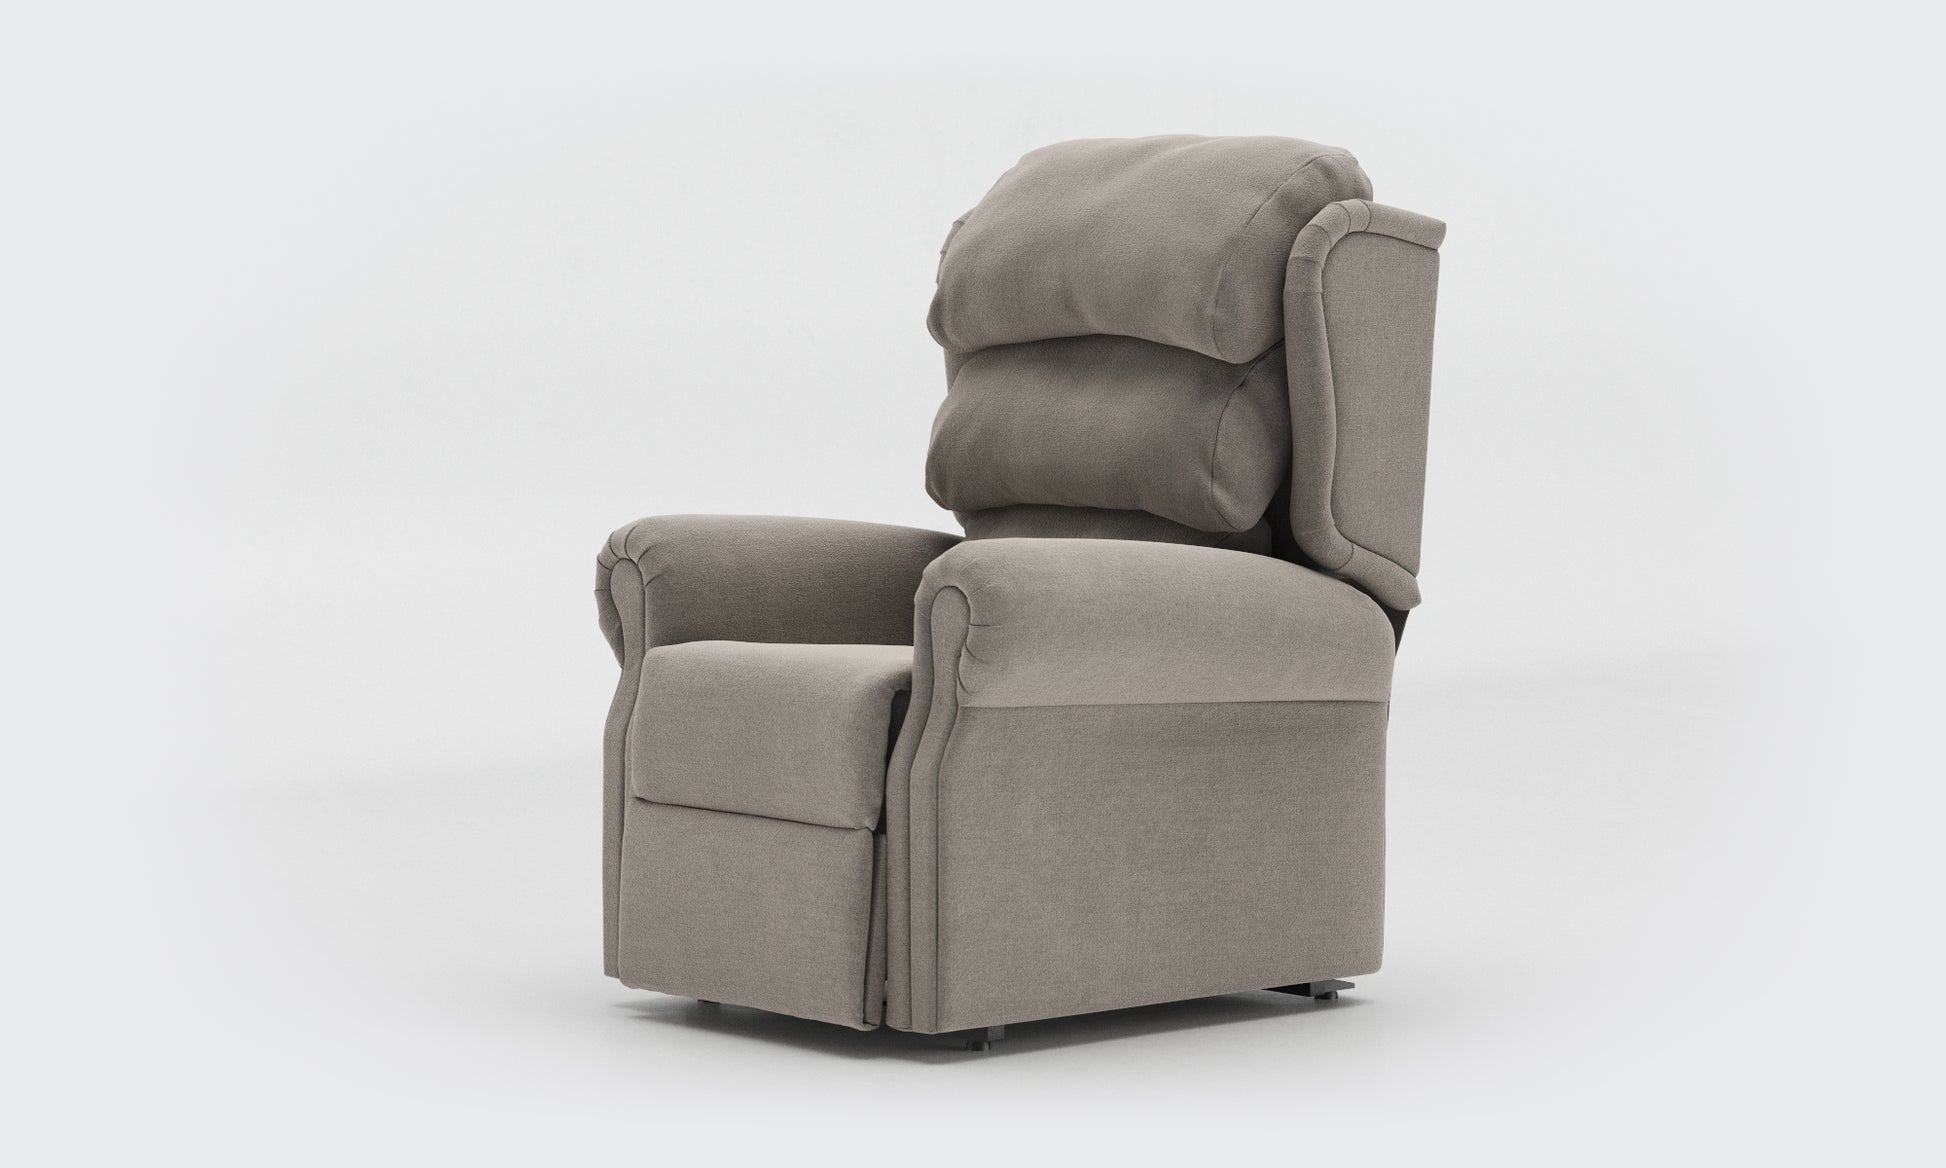 Adara Riser Recliner Chair compact waterfall Fabric Zinc